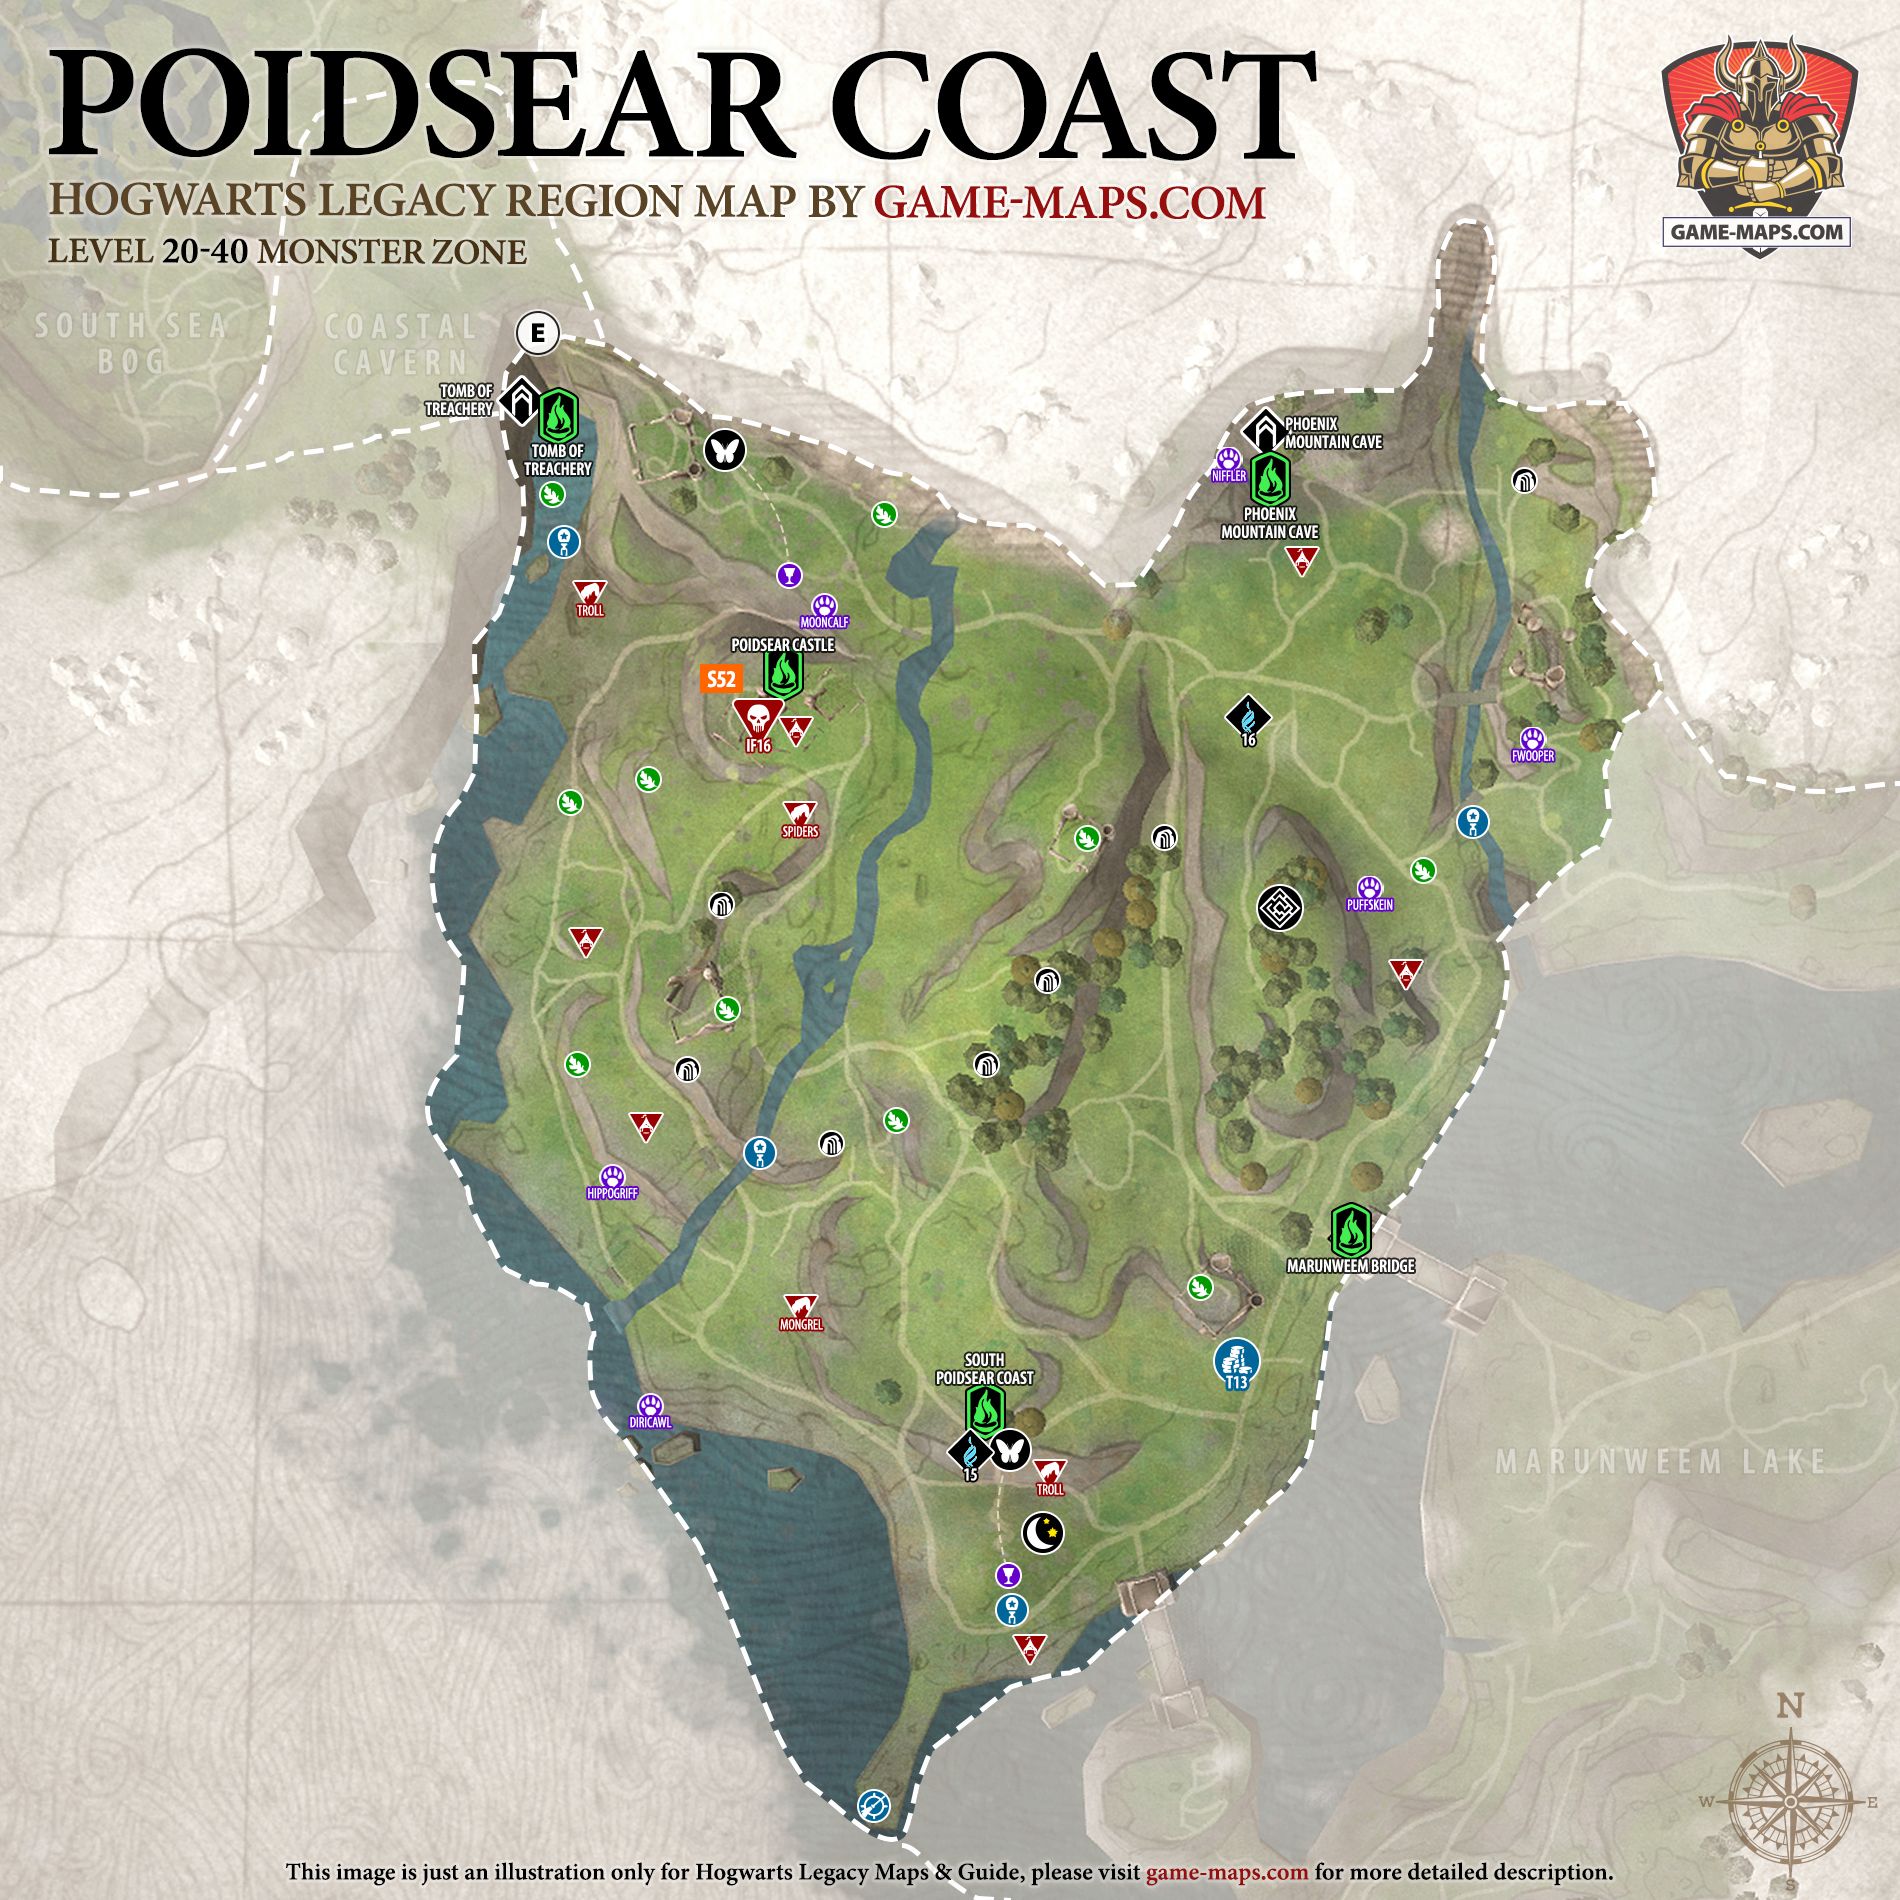 Hogwarts Legacy Map of Poidsear Coast